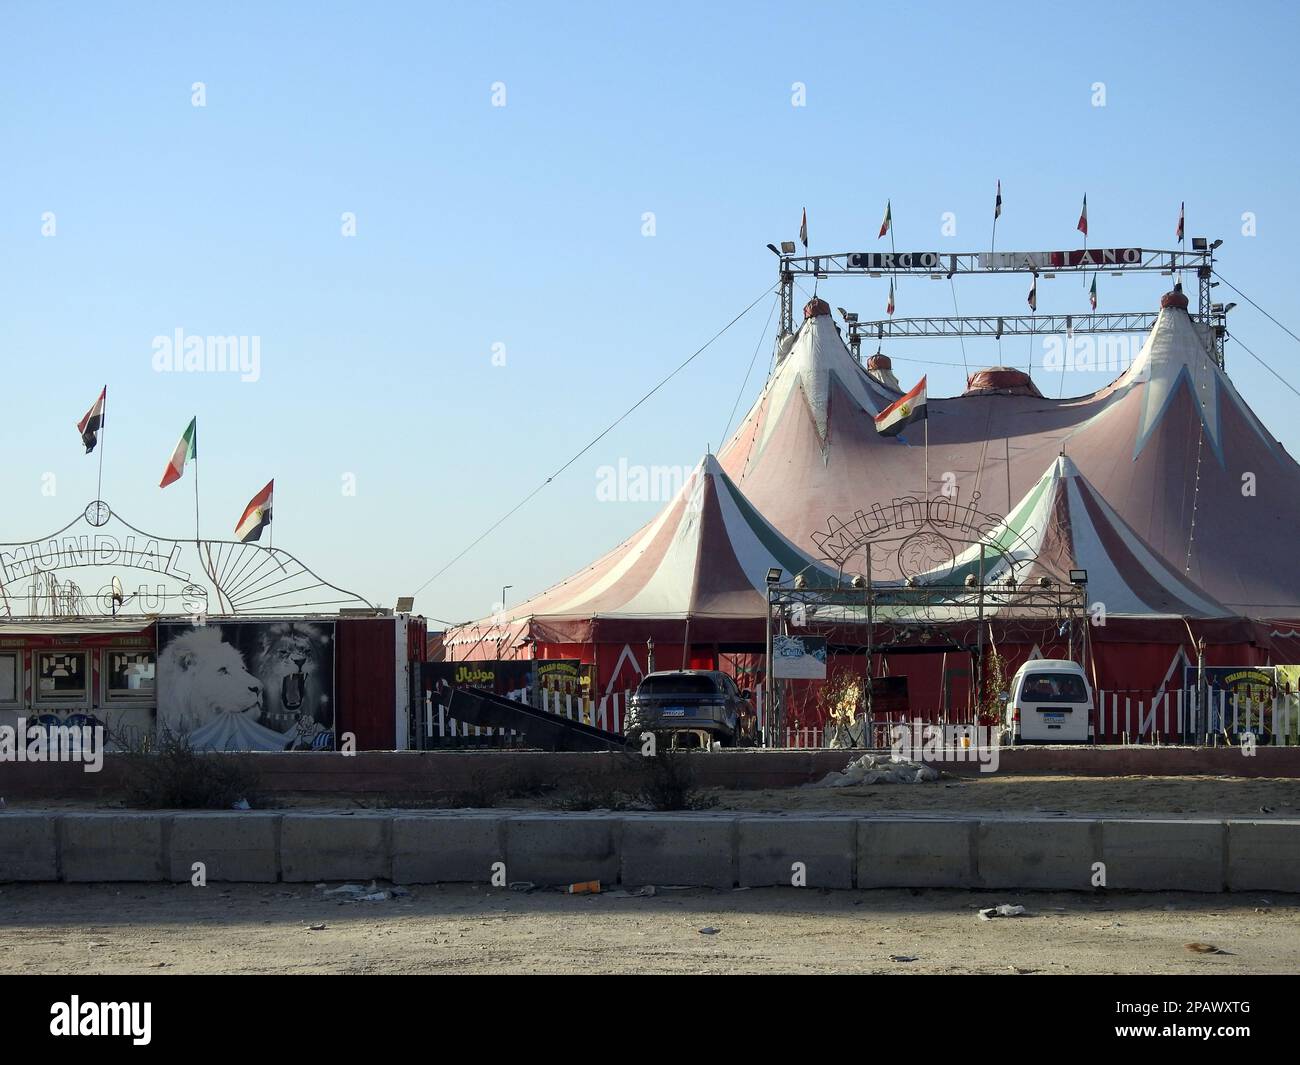 Kairo, Ägypten, März 11 2023: Mundial circo Italiano, der italienische Zirkus in Ägypten Neu-Kairo mit den italienischen und ägyptischen Flaggen, Zelte eines Entertainments Stockfoto